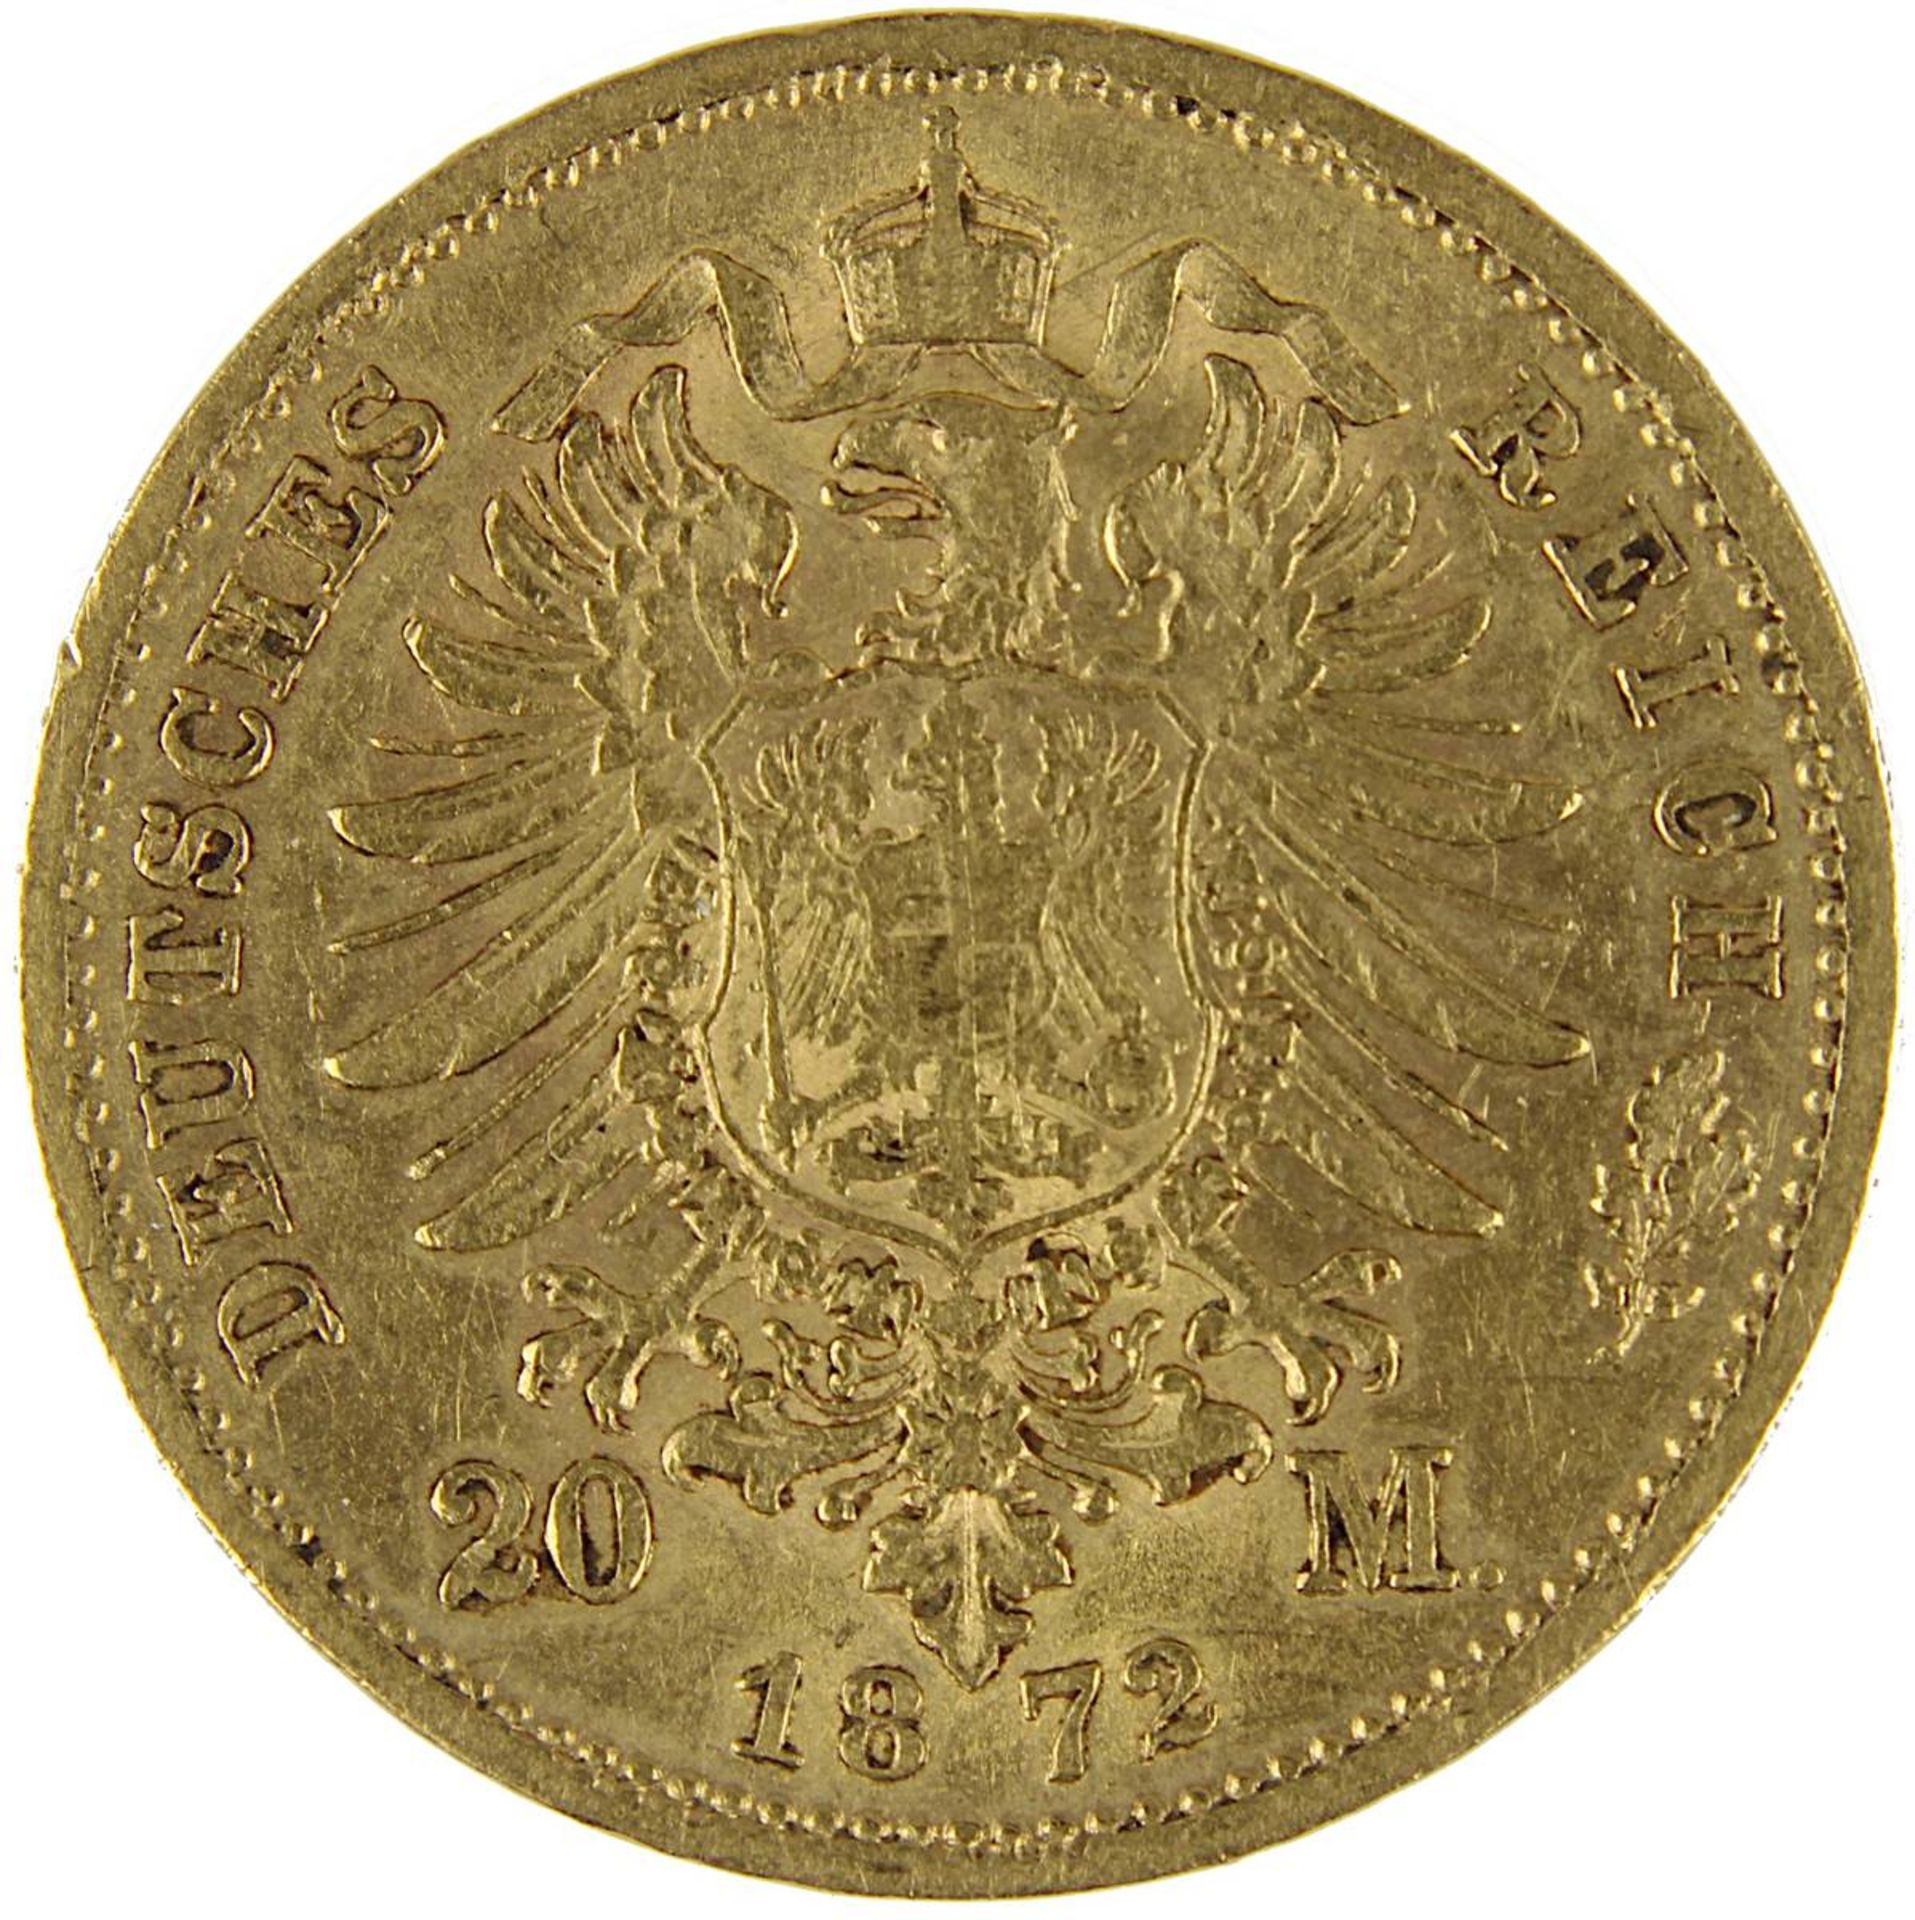 Goldmünze 20 Mark, Sachsen 1872 König Johann, Av. Kopf n. li., darunter E, und Umschrift, Rev. - Bild 3 aus 3